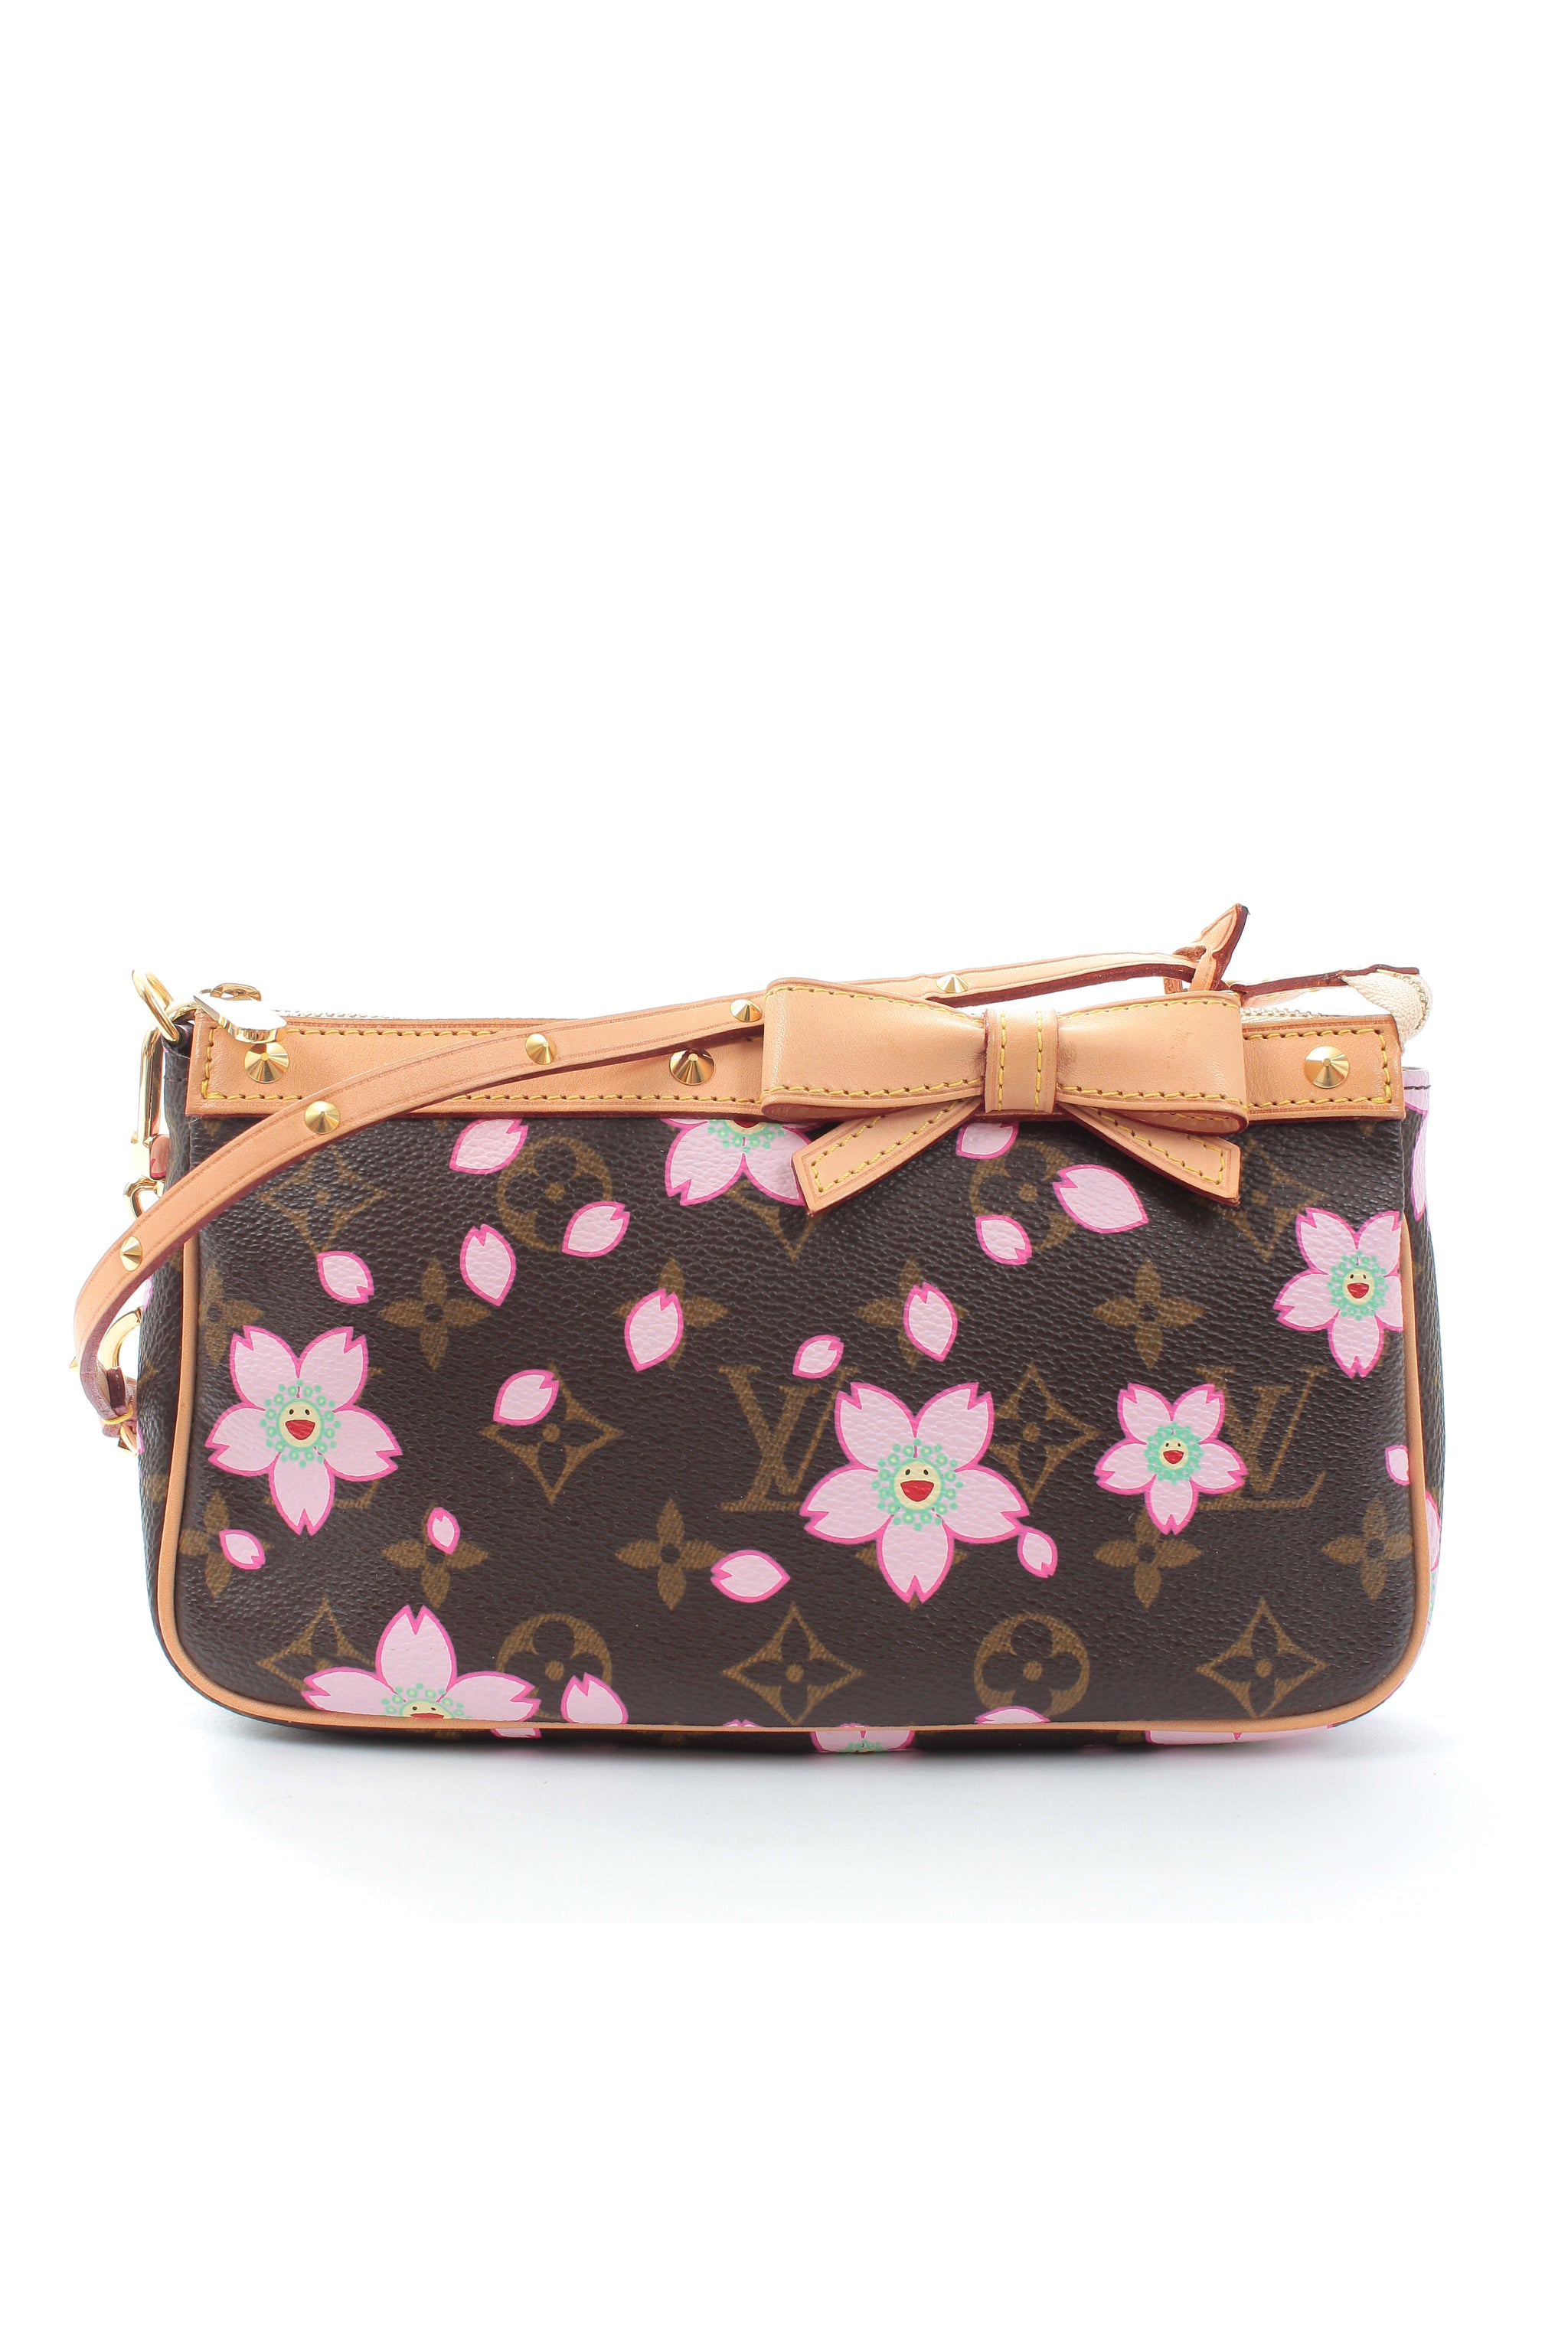 Louis Vuitton x Takashi Murakami Cherry Blossom Monogram Pink Bag